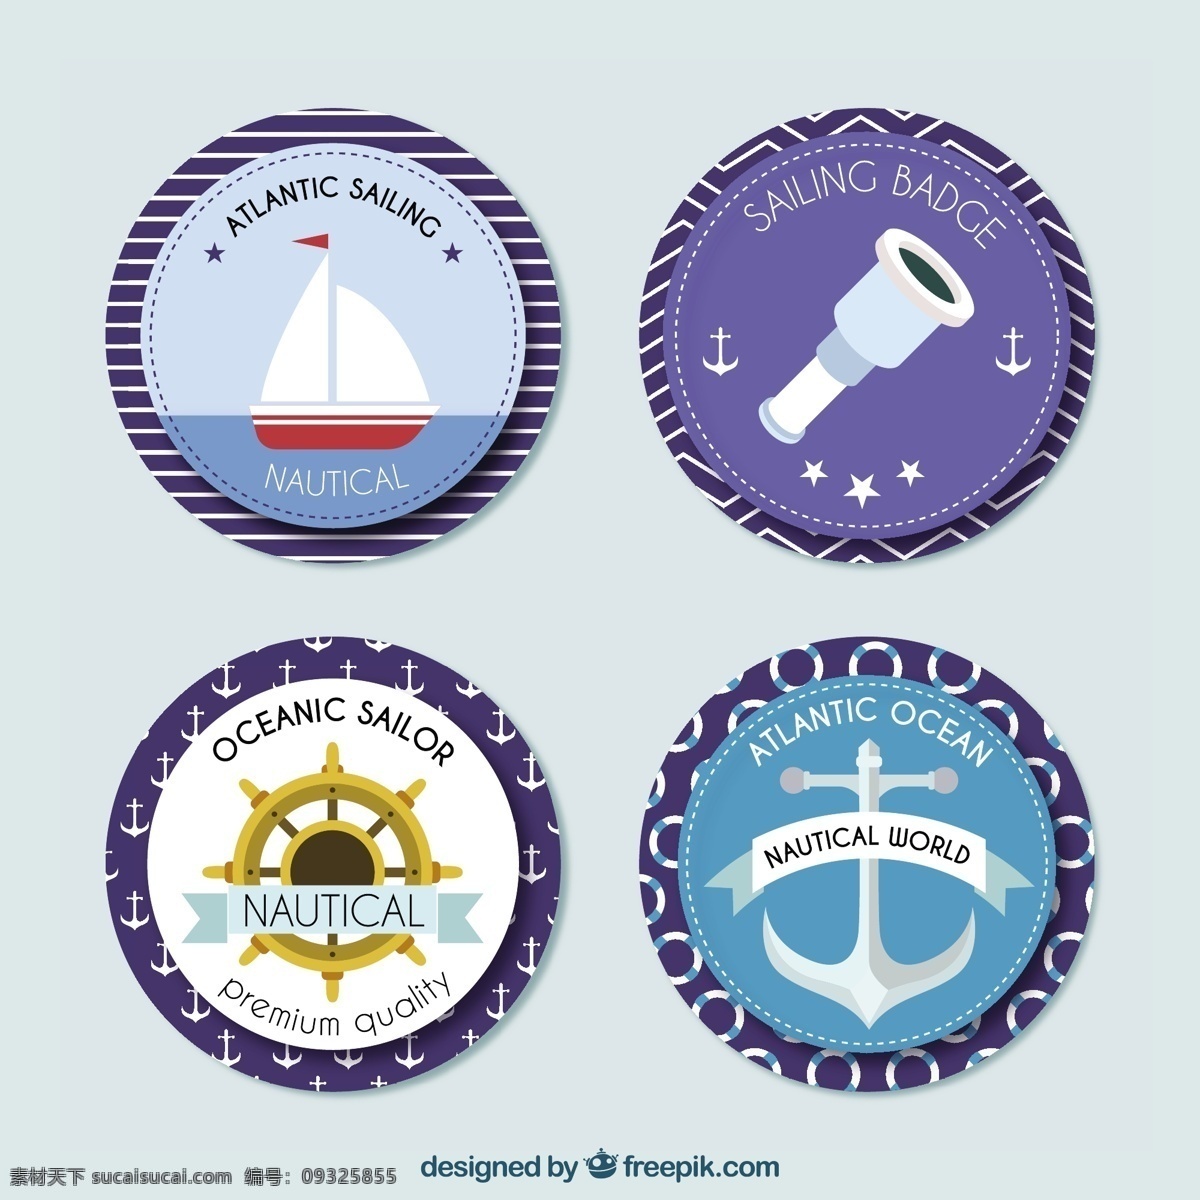 平面设计 中 圆形 航海 徽章 标签 海 平板 绳子 船 锚 海洋 贴纸 元素 圆 水手 海军 灰色